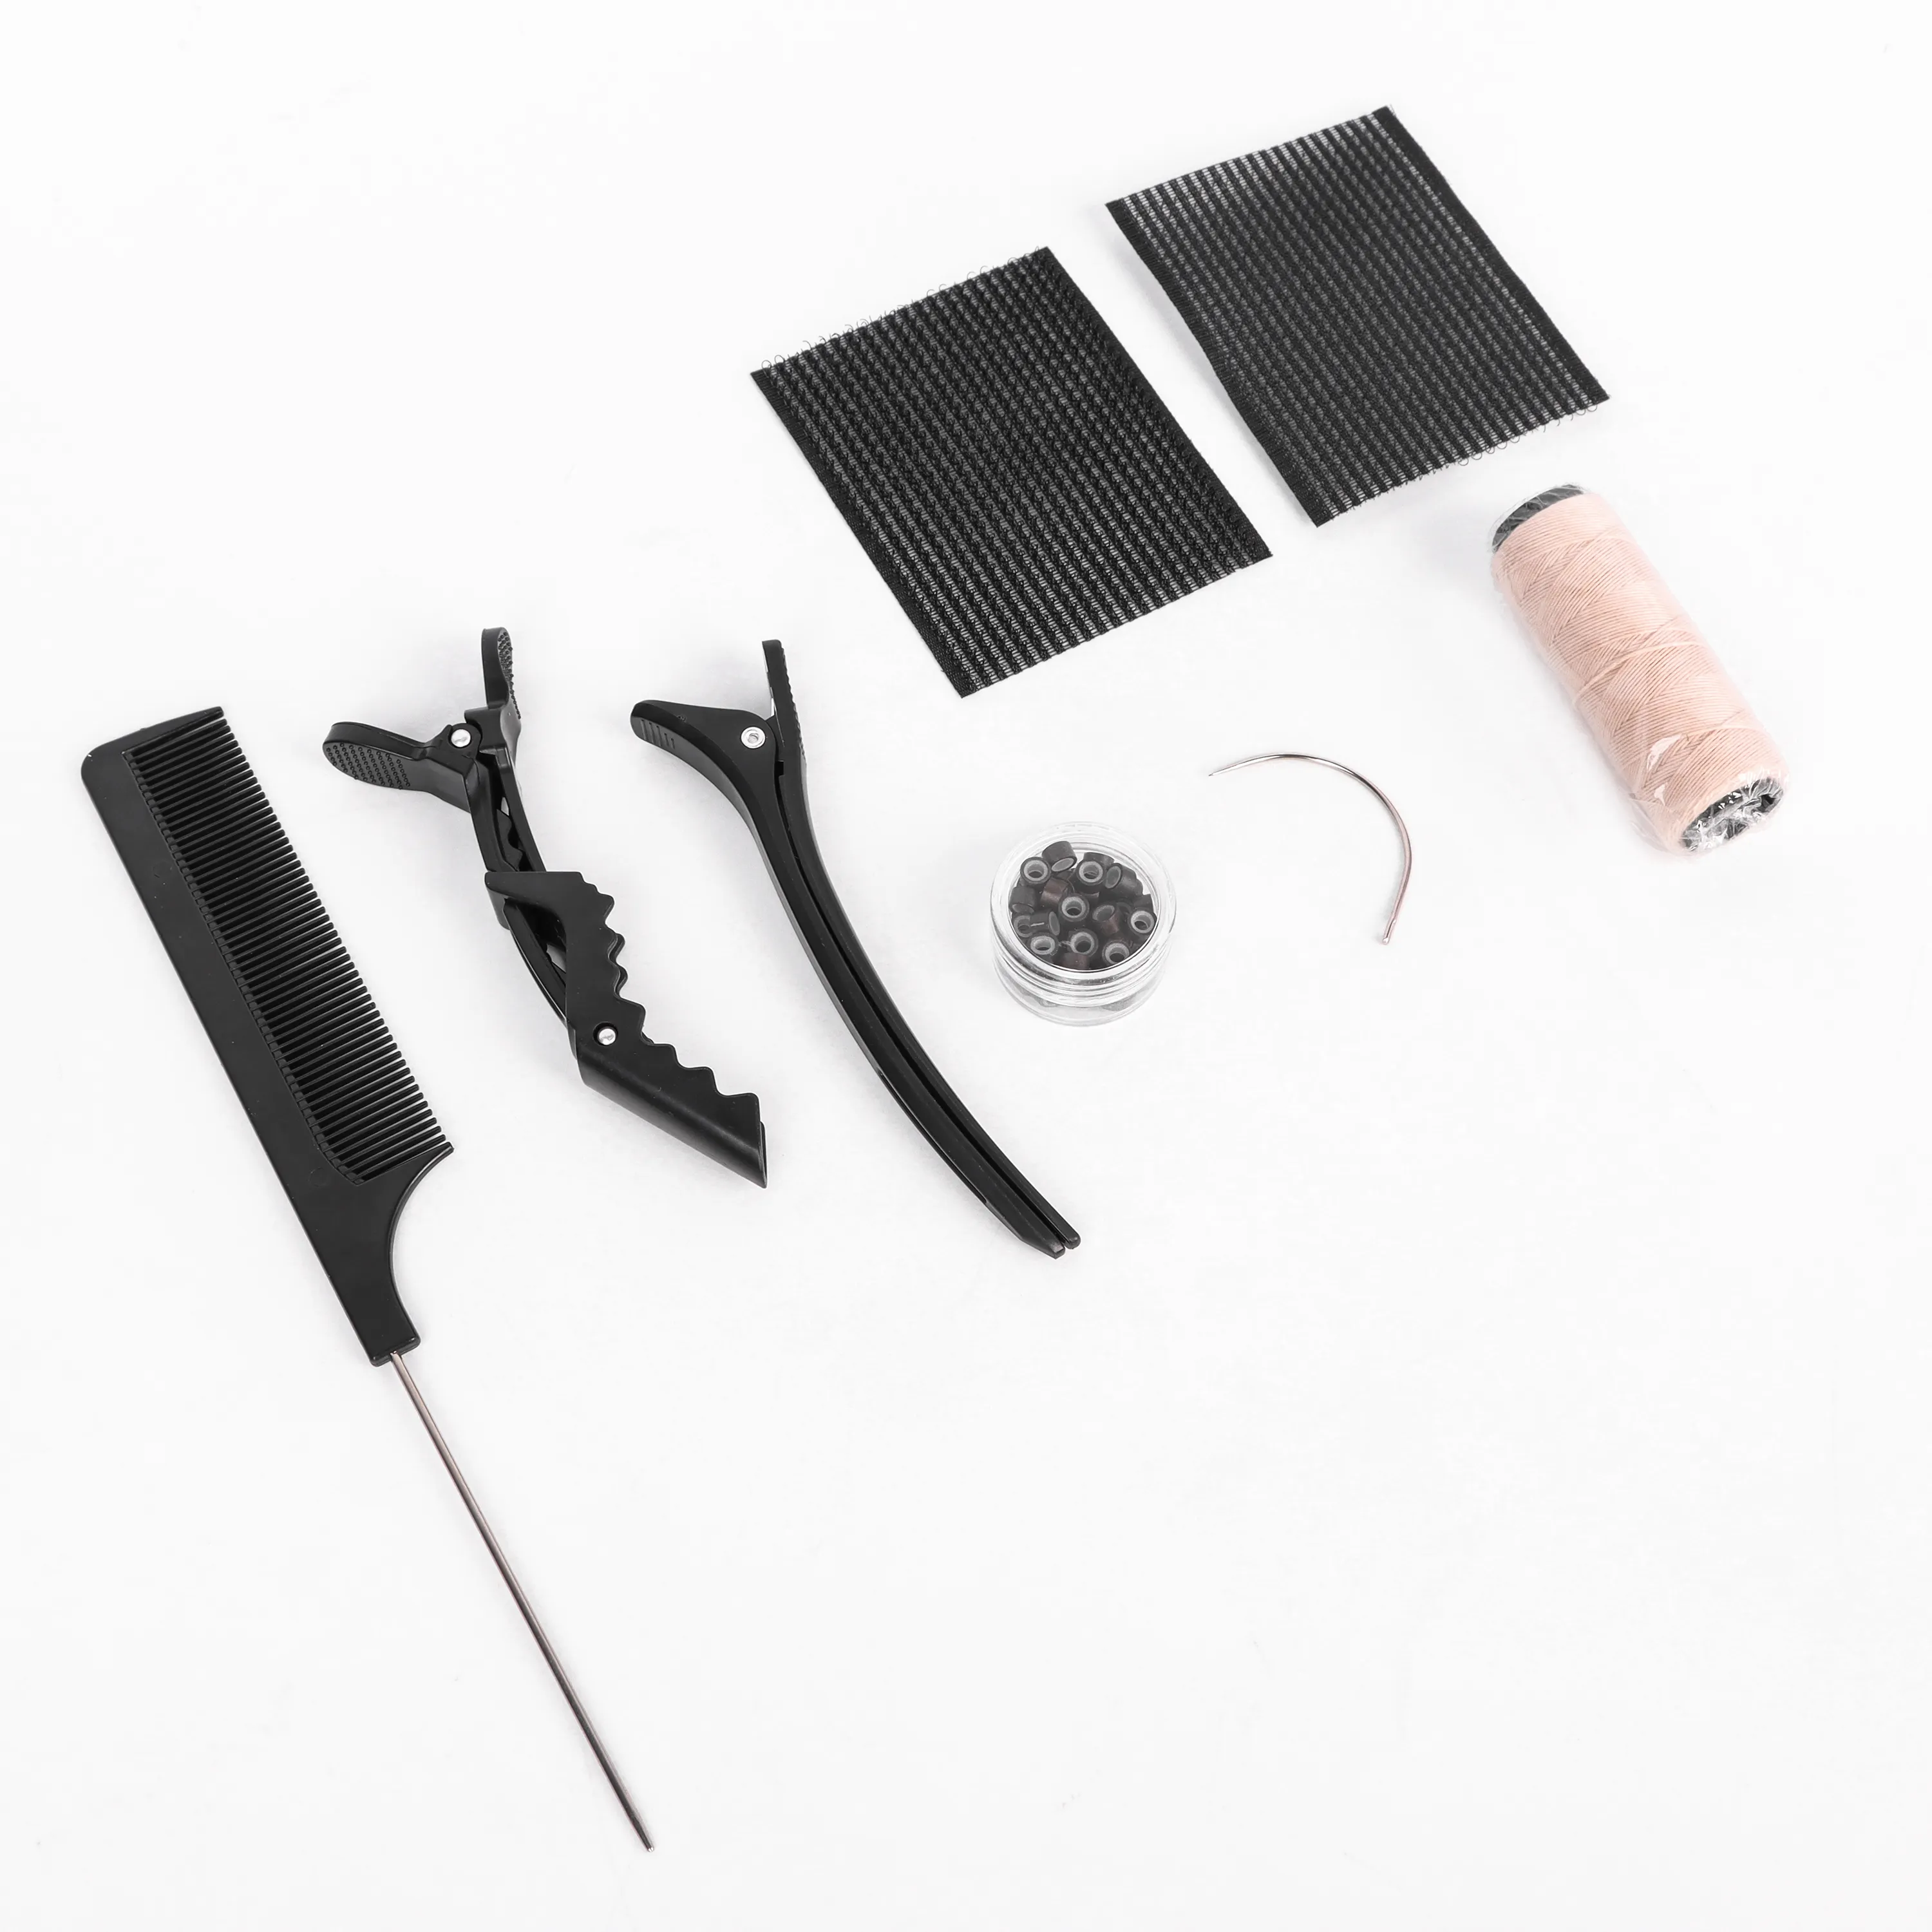 Hot Selling Nieuwe Hair Extensions Tool Kit Training Kit Met Micro Kralen Sets Clip Kit Met Haak Naald